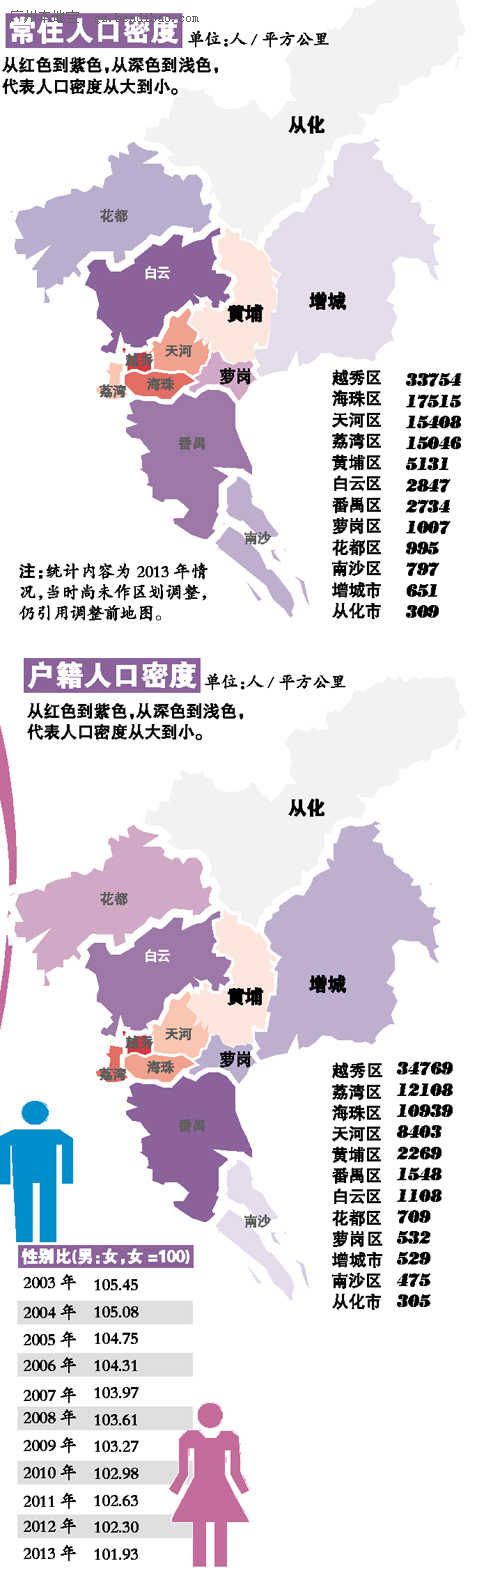 广州常住人口_2013年广州常住人口